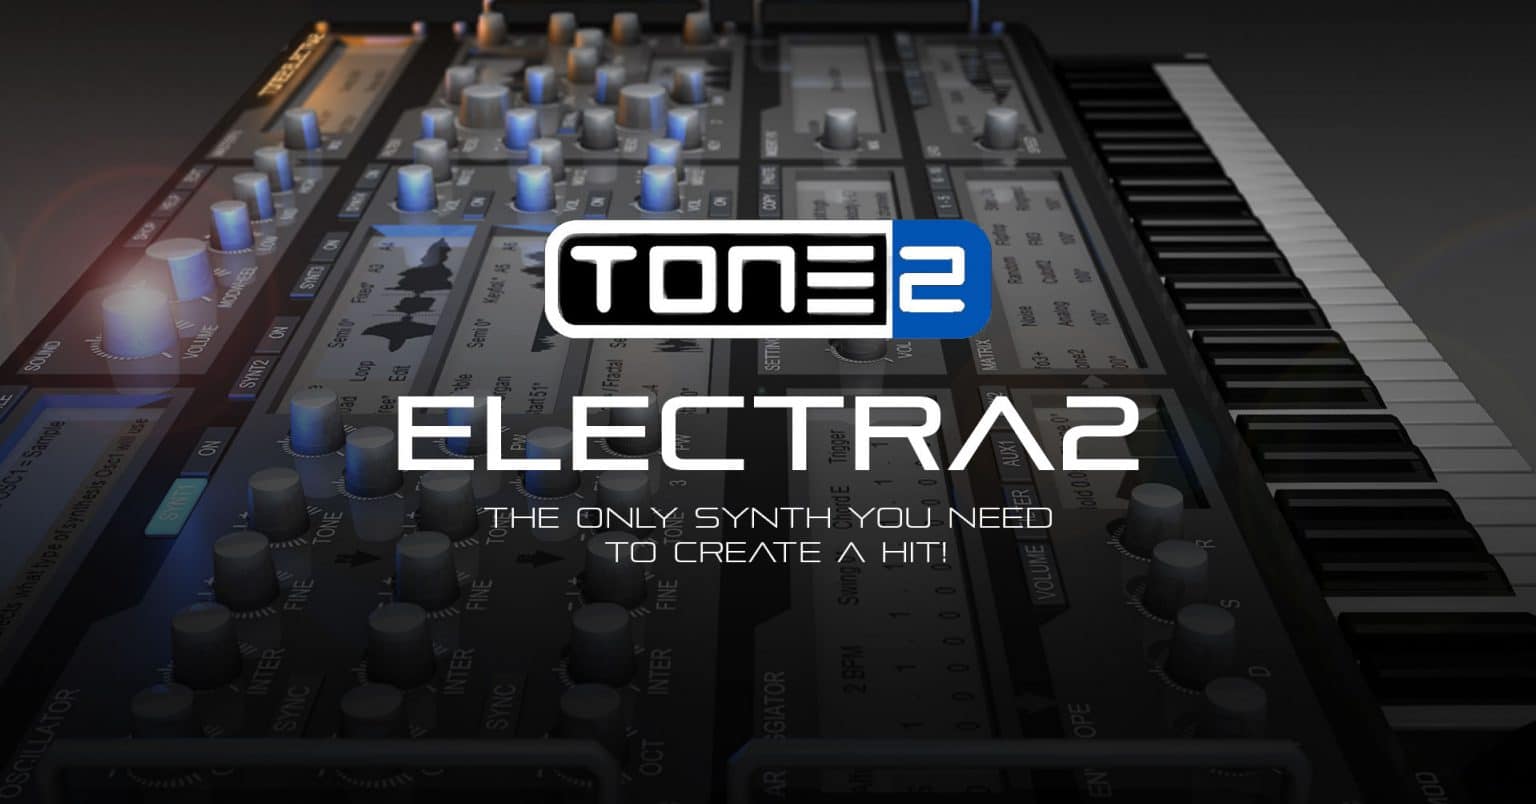 tone2 electra2 torrent mac